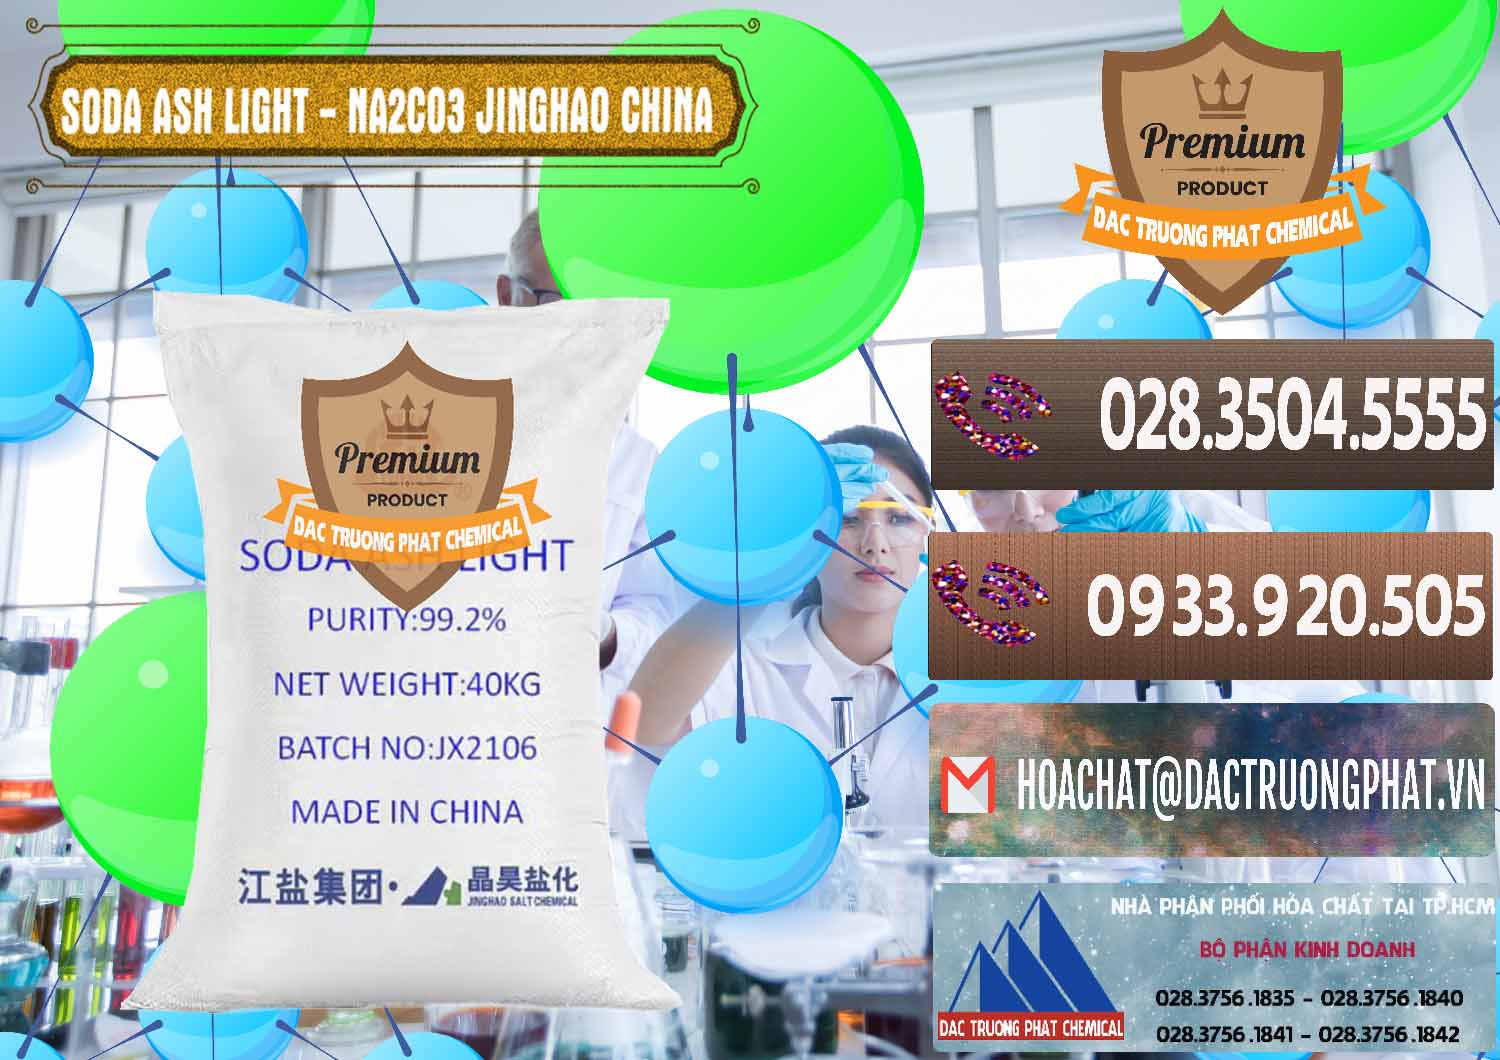 Nơi bán & phân phối Soda Ash Light - NA2CO3 Jinghao Trung Quốc China - 0339 - Chuyên cung ứng và phân phối hóa chất tại TP.HCM - hoachatviet.net